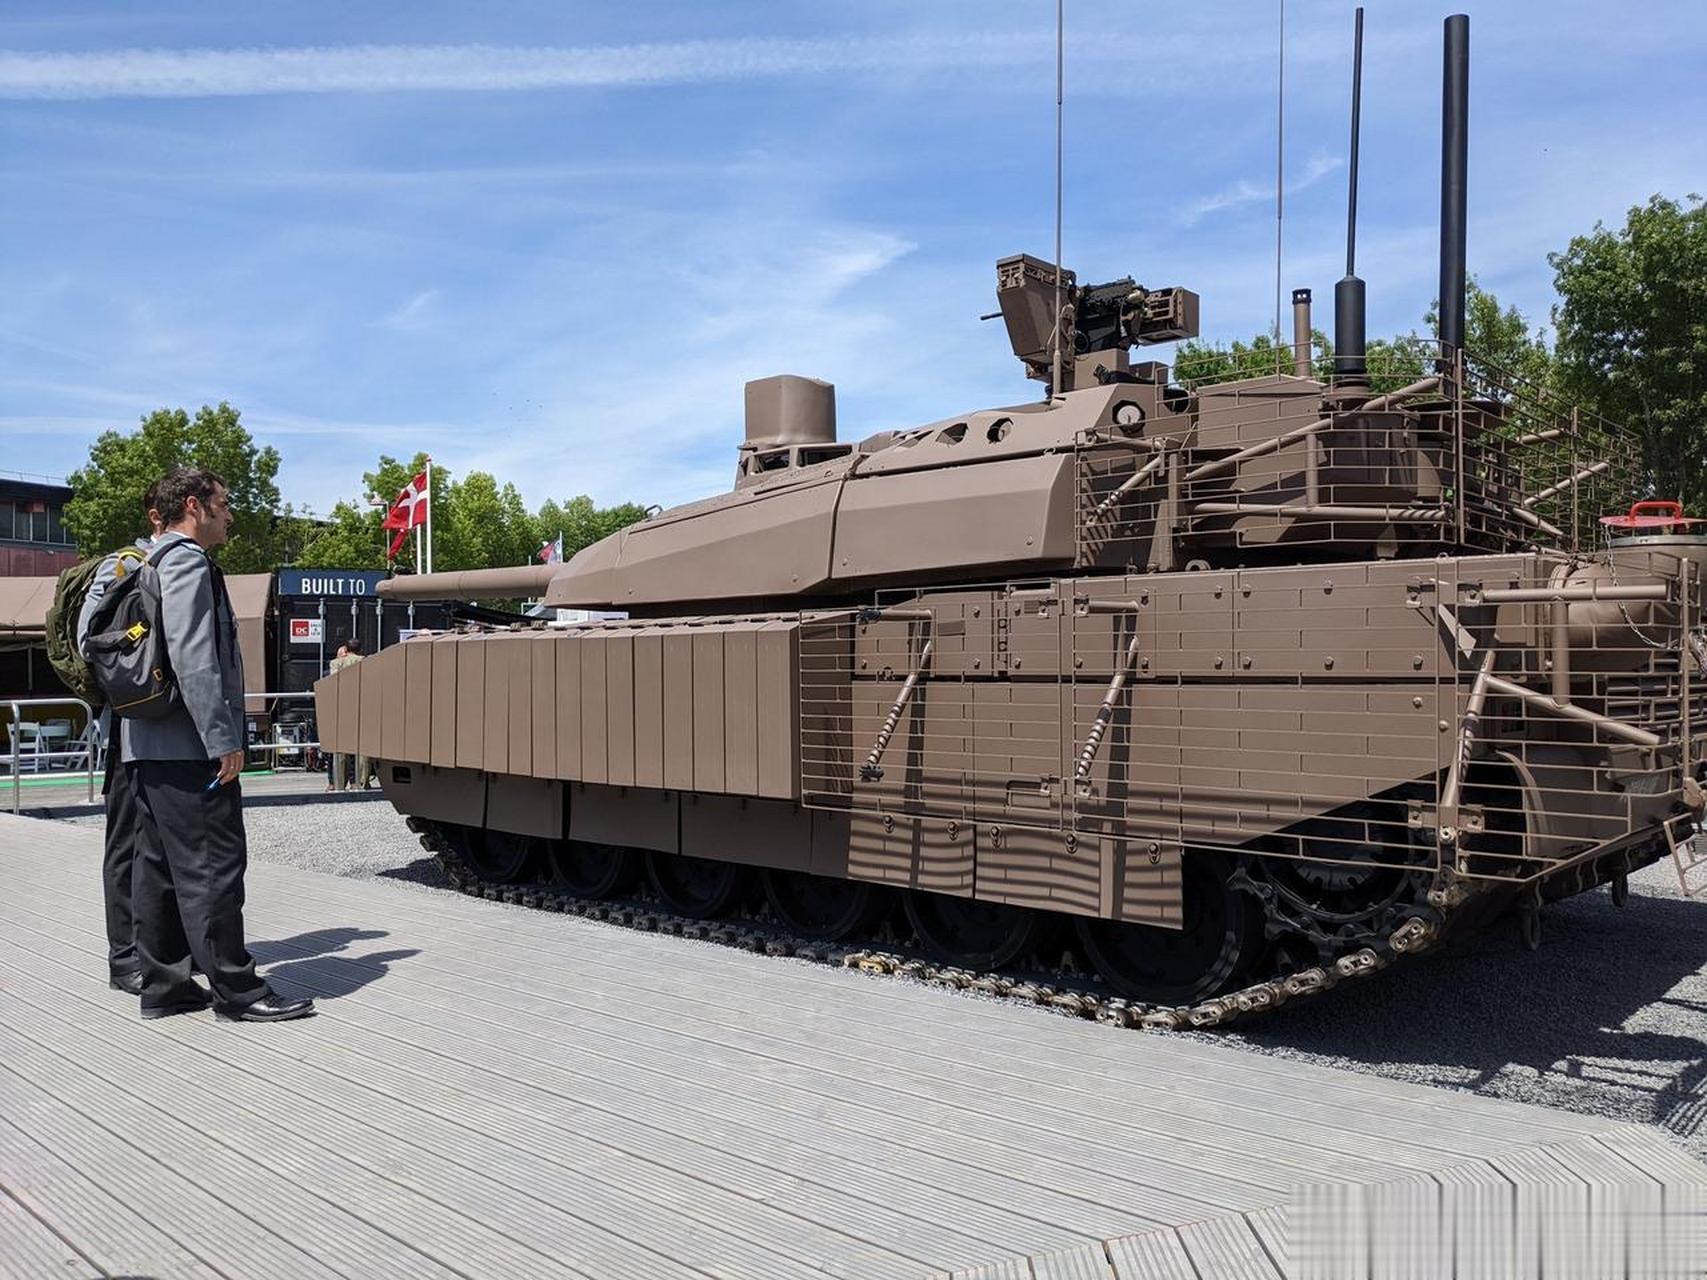 法国陆军开始测试新型勒克莱尔xlr主战坦克,该坦克装备一门120毫米